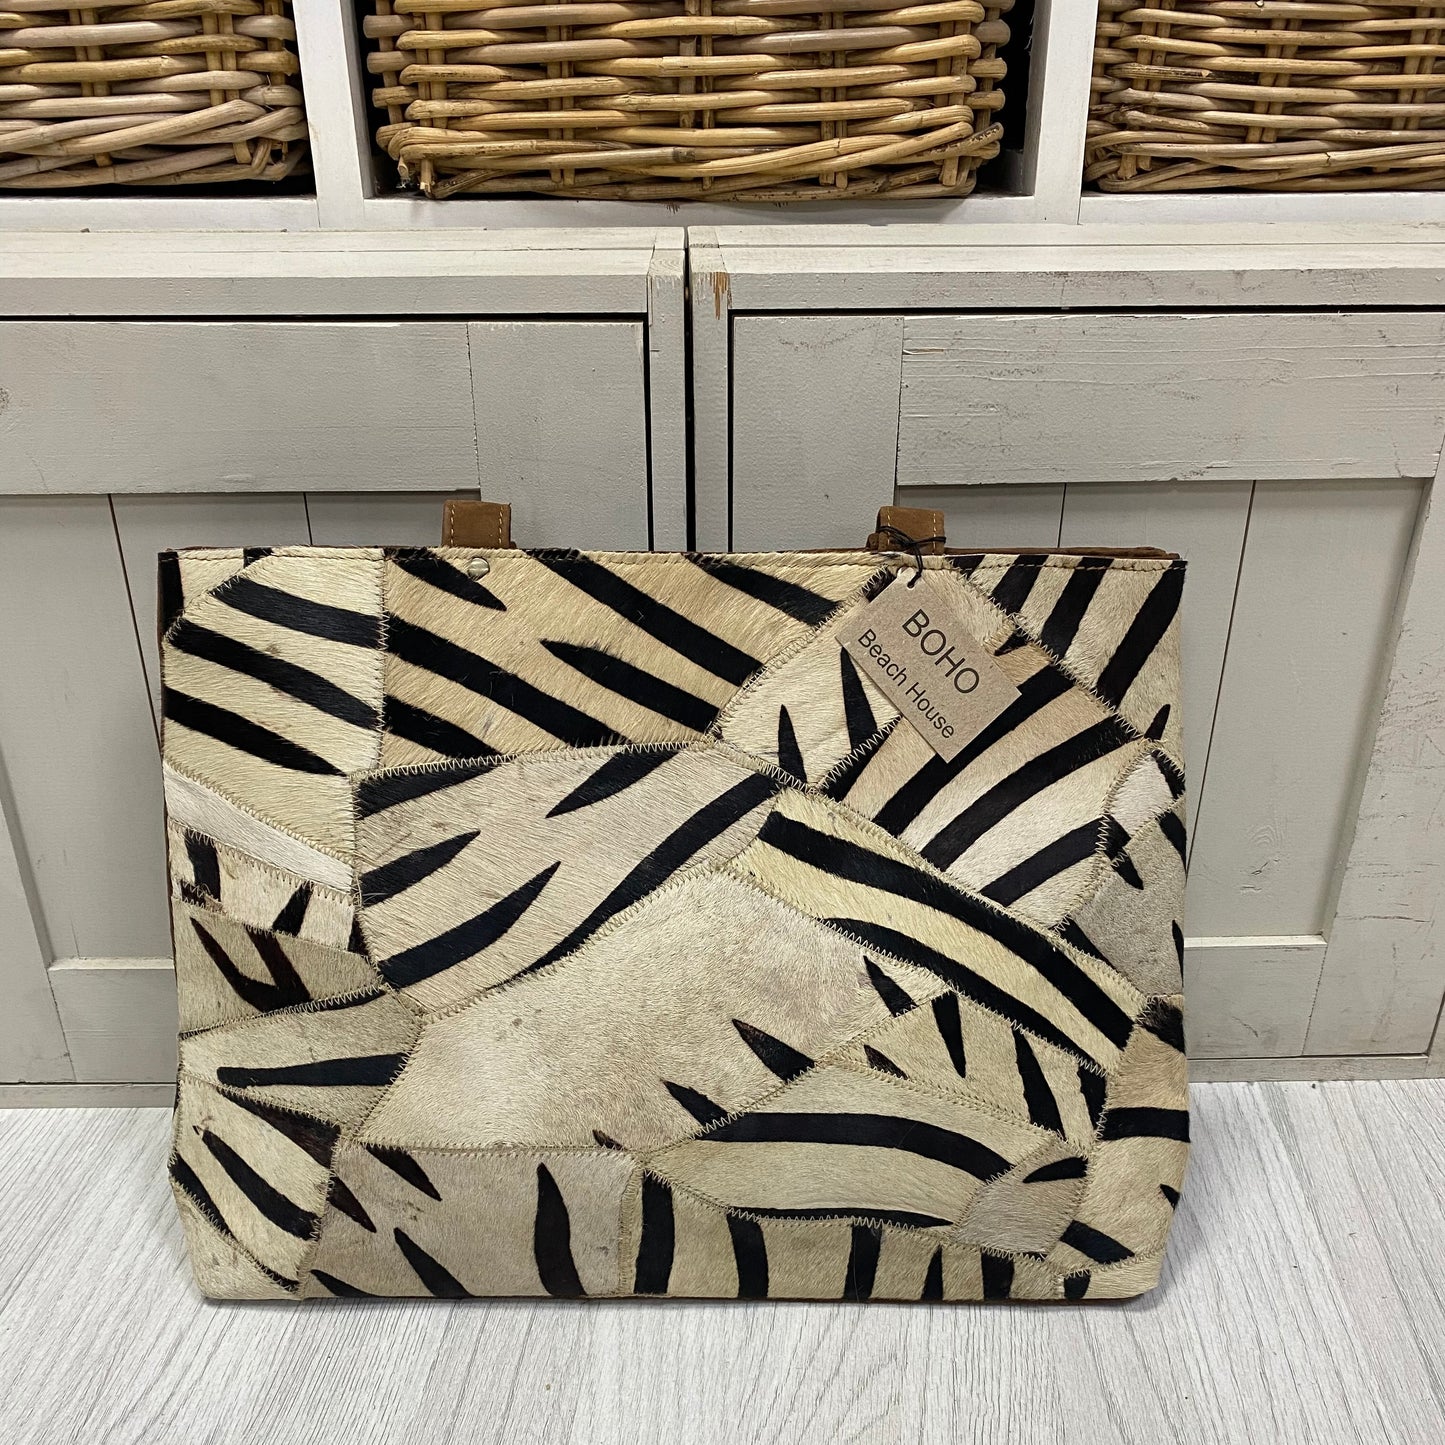 Leather animal print Zebra shoulder bag